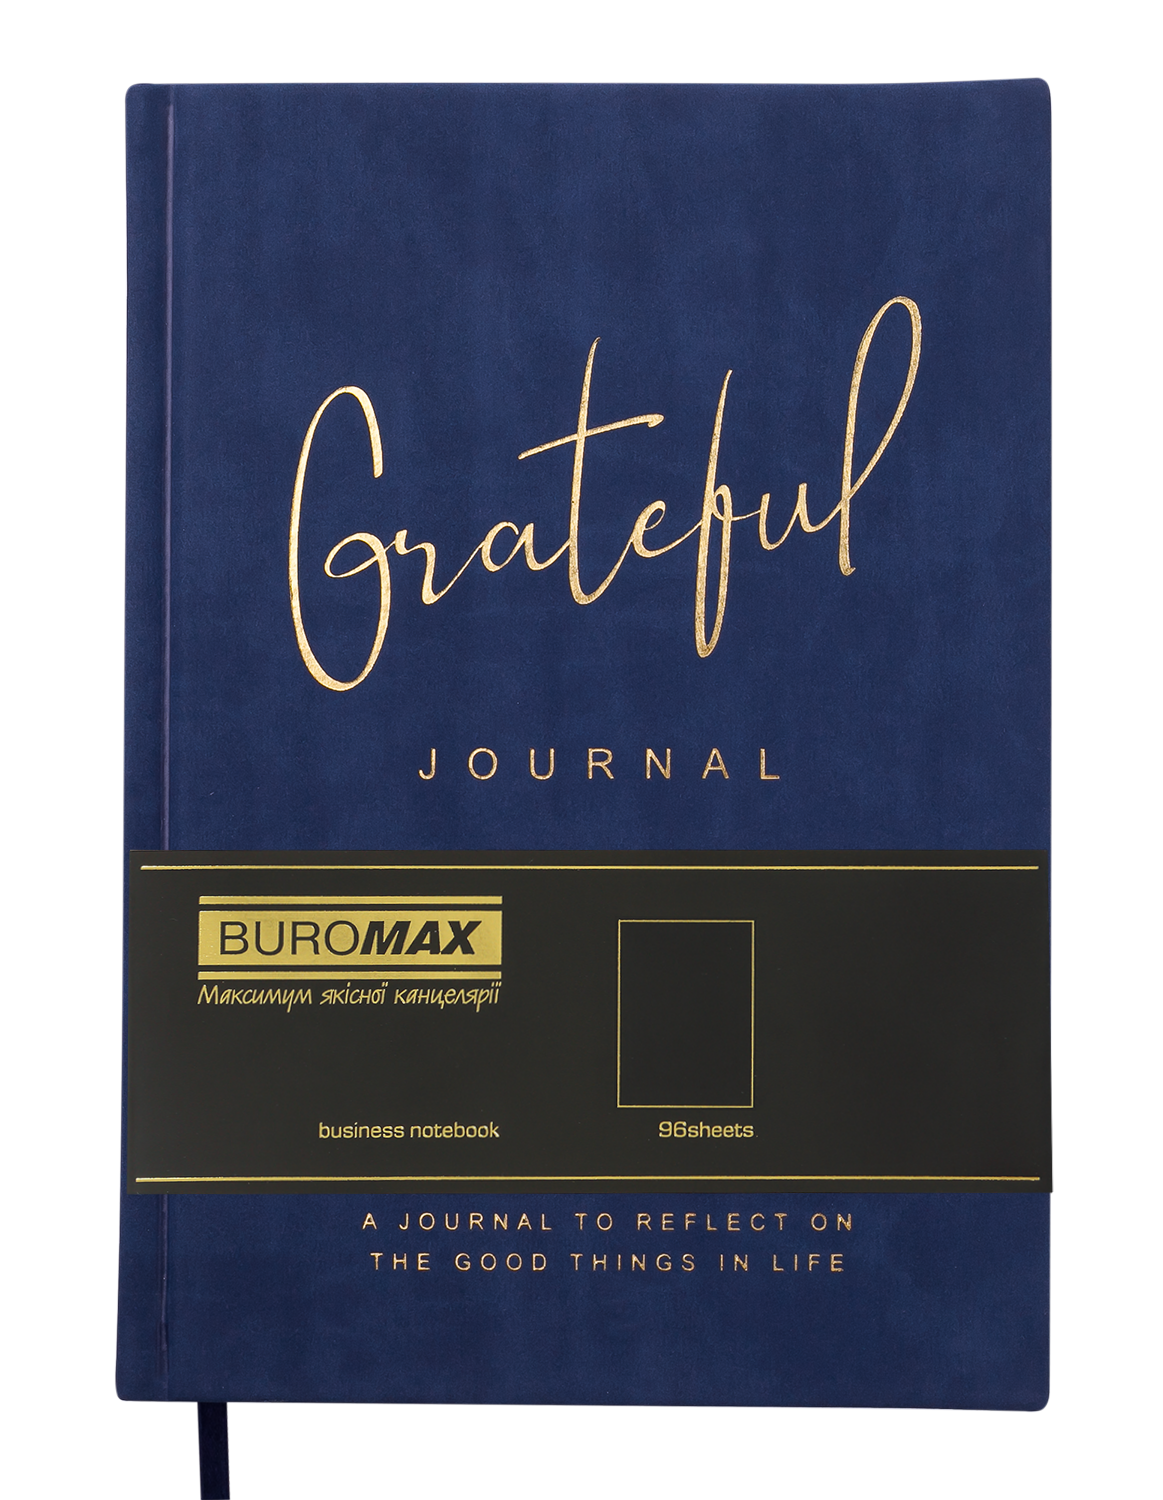 Блокнот деловой Buromax Grateful А5 96 л. без линирования обложка искусственная кожа синий (BM.295019-02) - фото 2